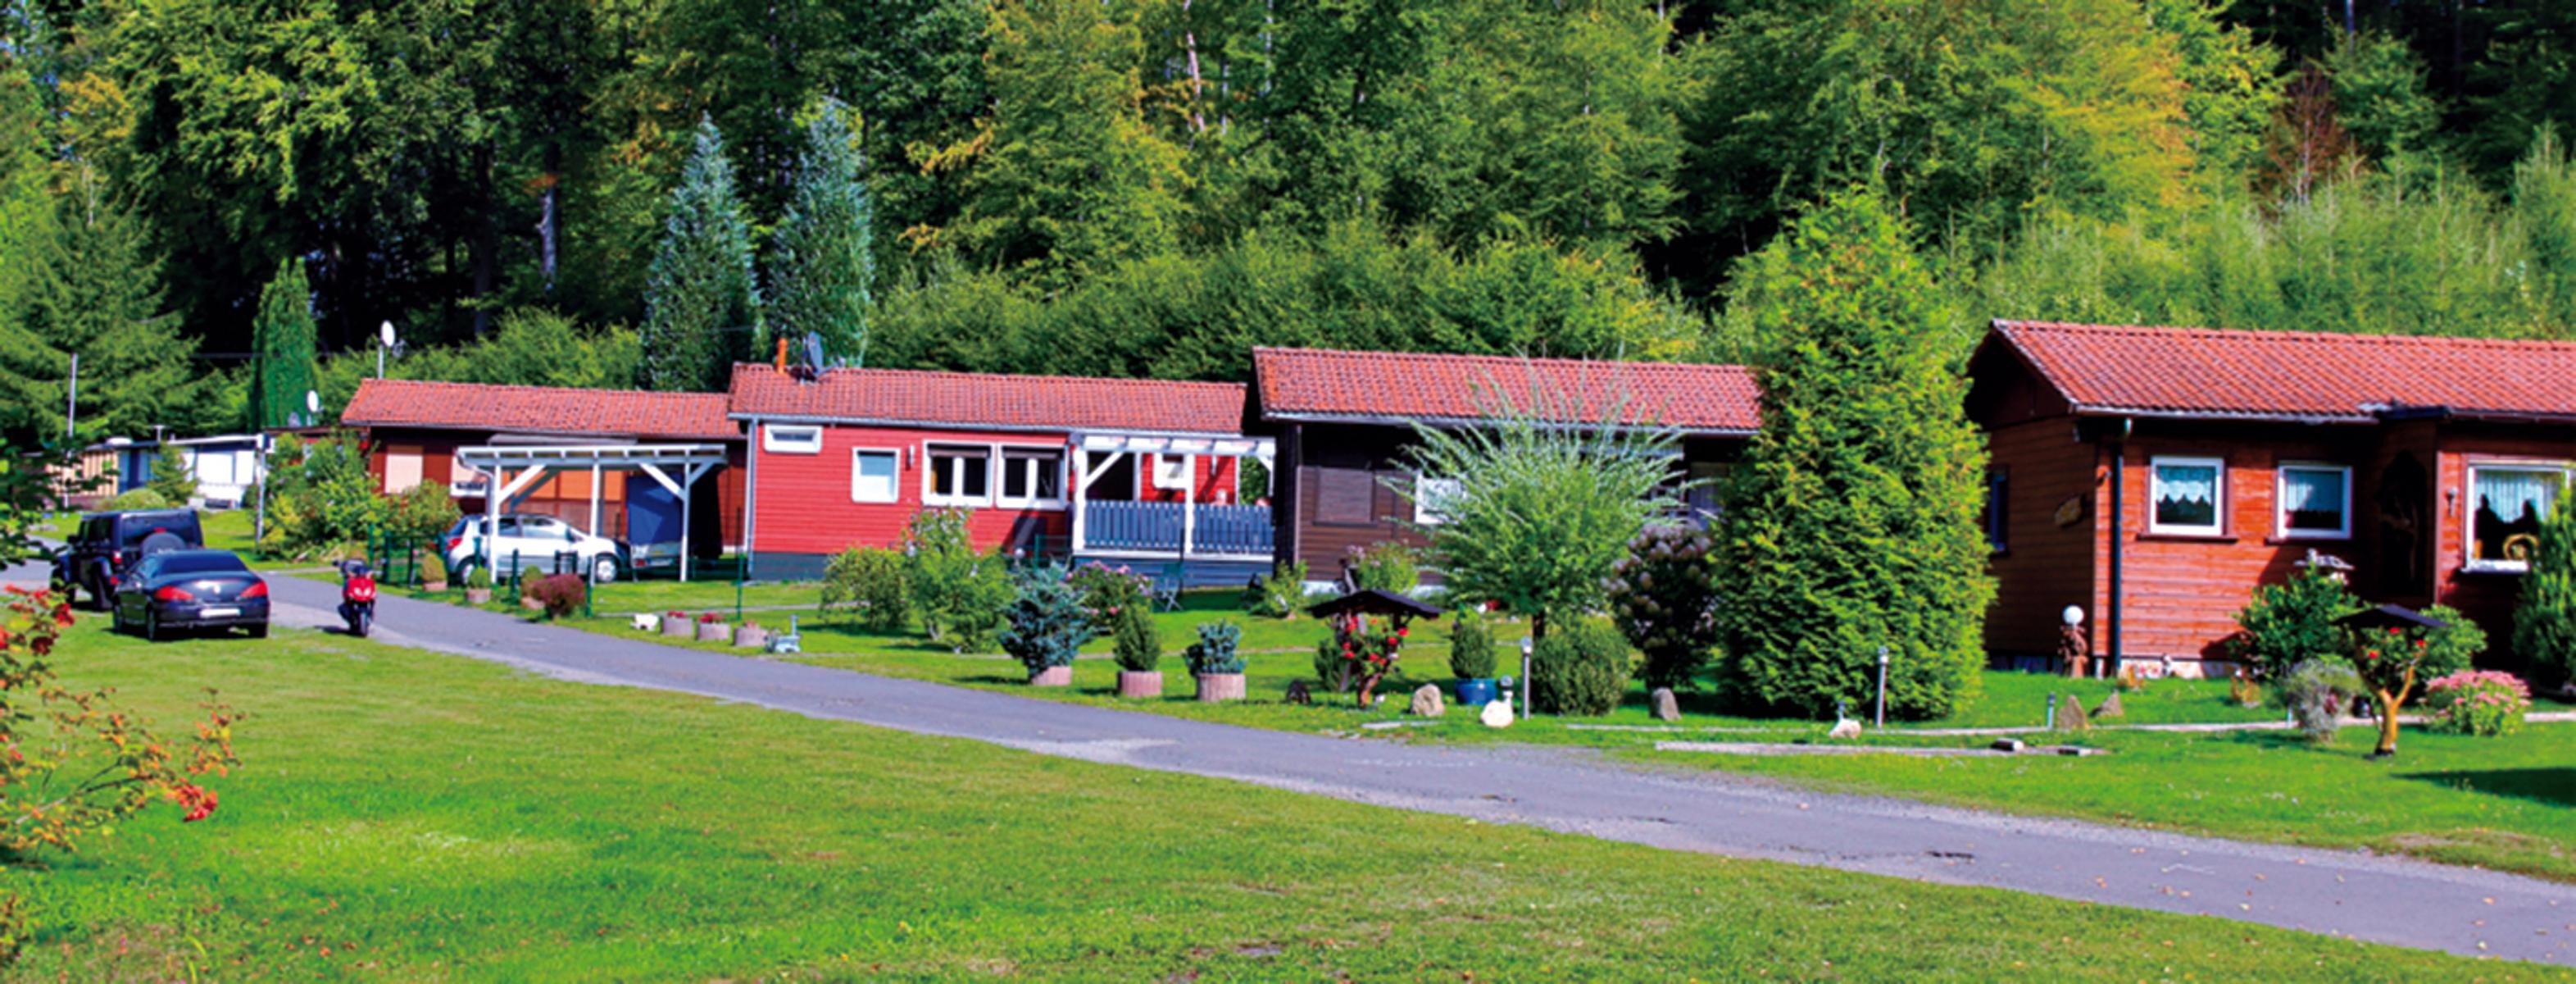 Inmitten herrlicher Natur befindet sich der Caravanpark im hessischen Laubach im Vogelsberg. Camper und Wohnmobilisten finden hier passende Plätze, auch in Bungalows kann übernachtet werden.